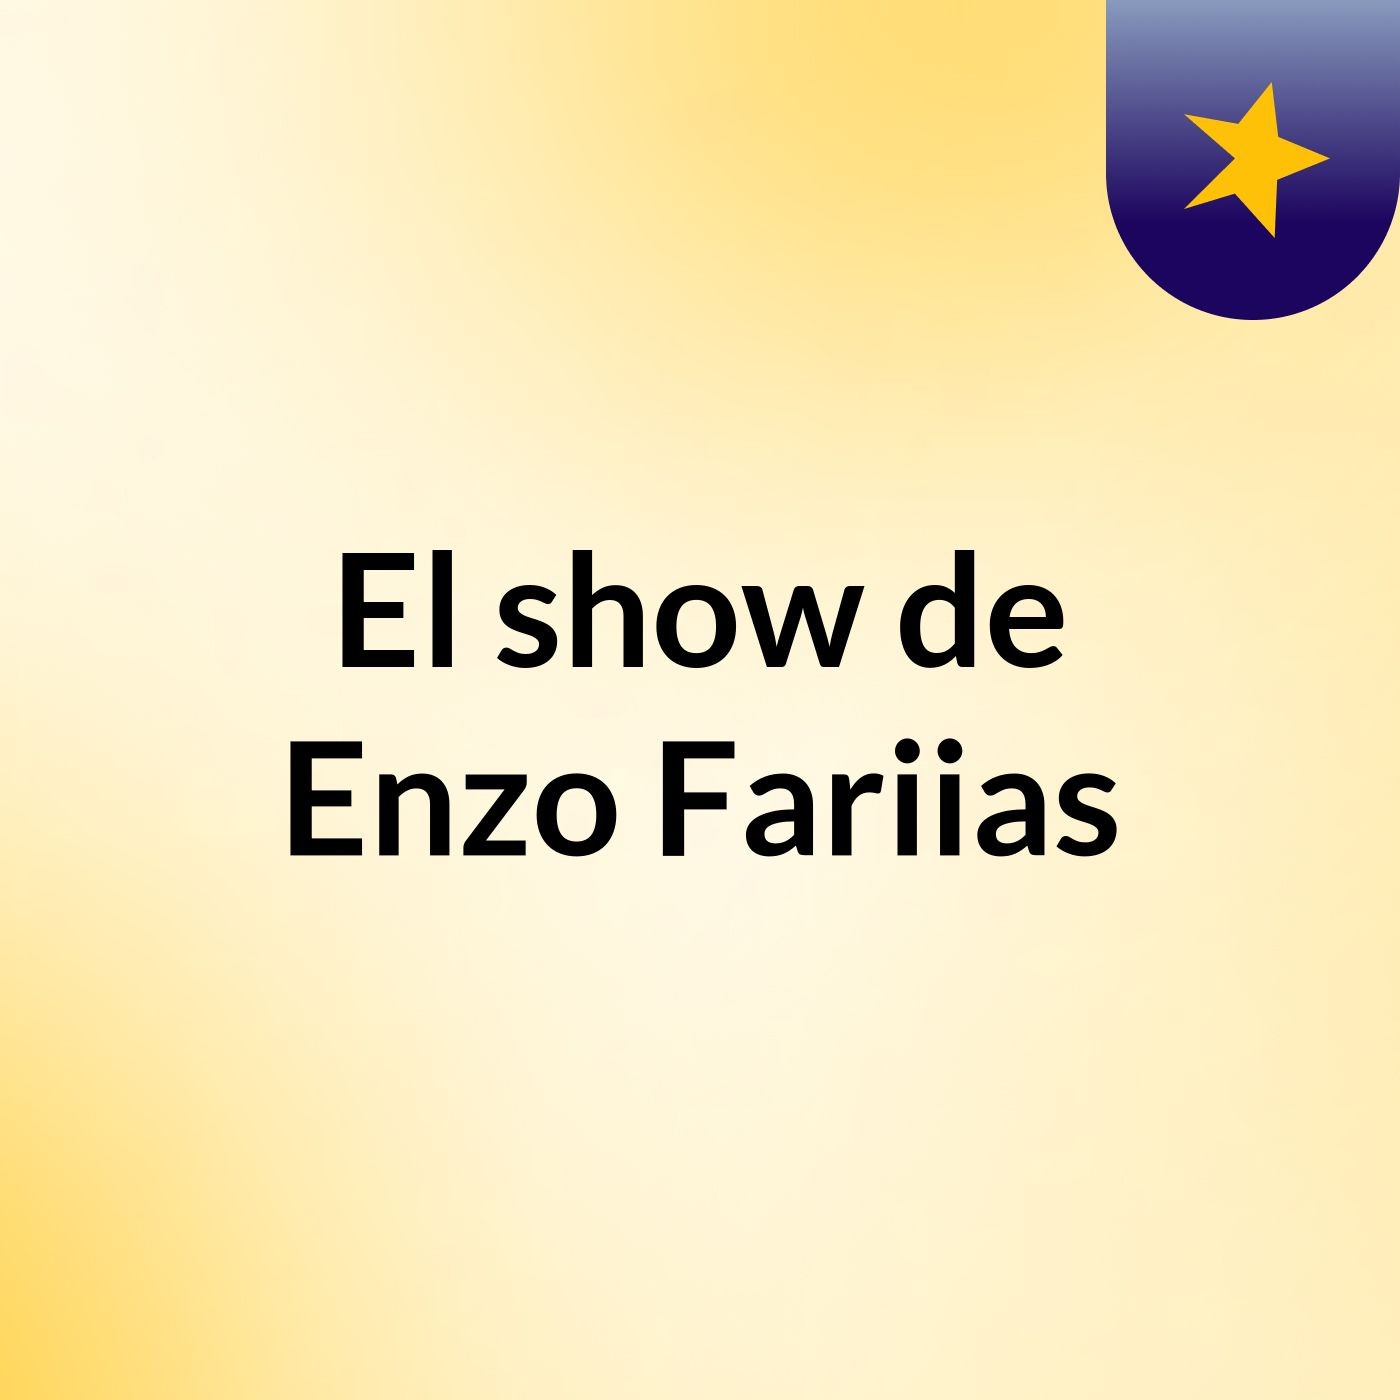 El show de Enzo Fariias